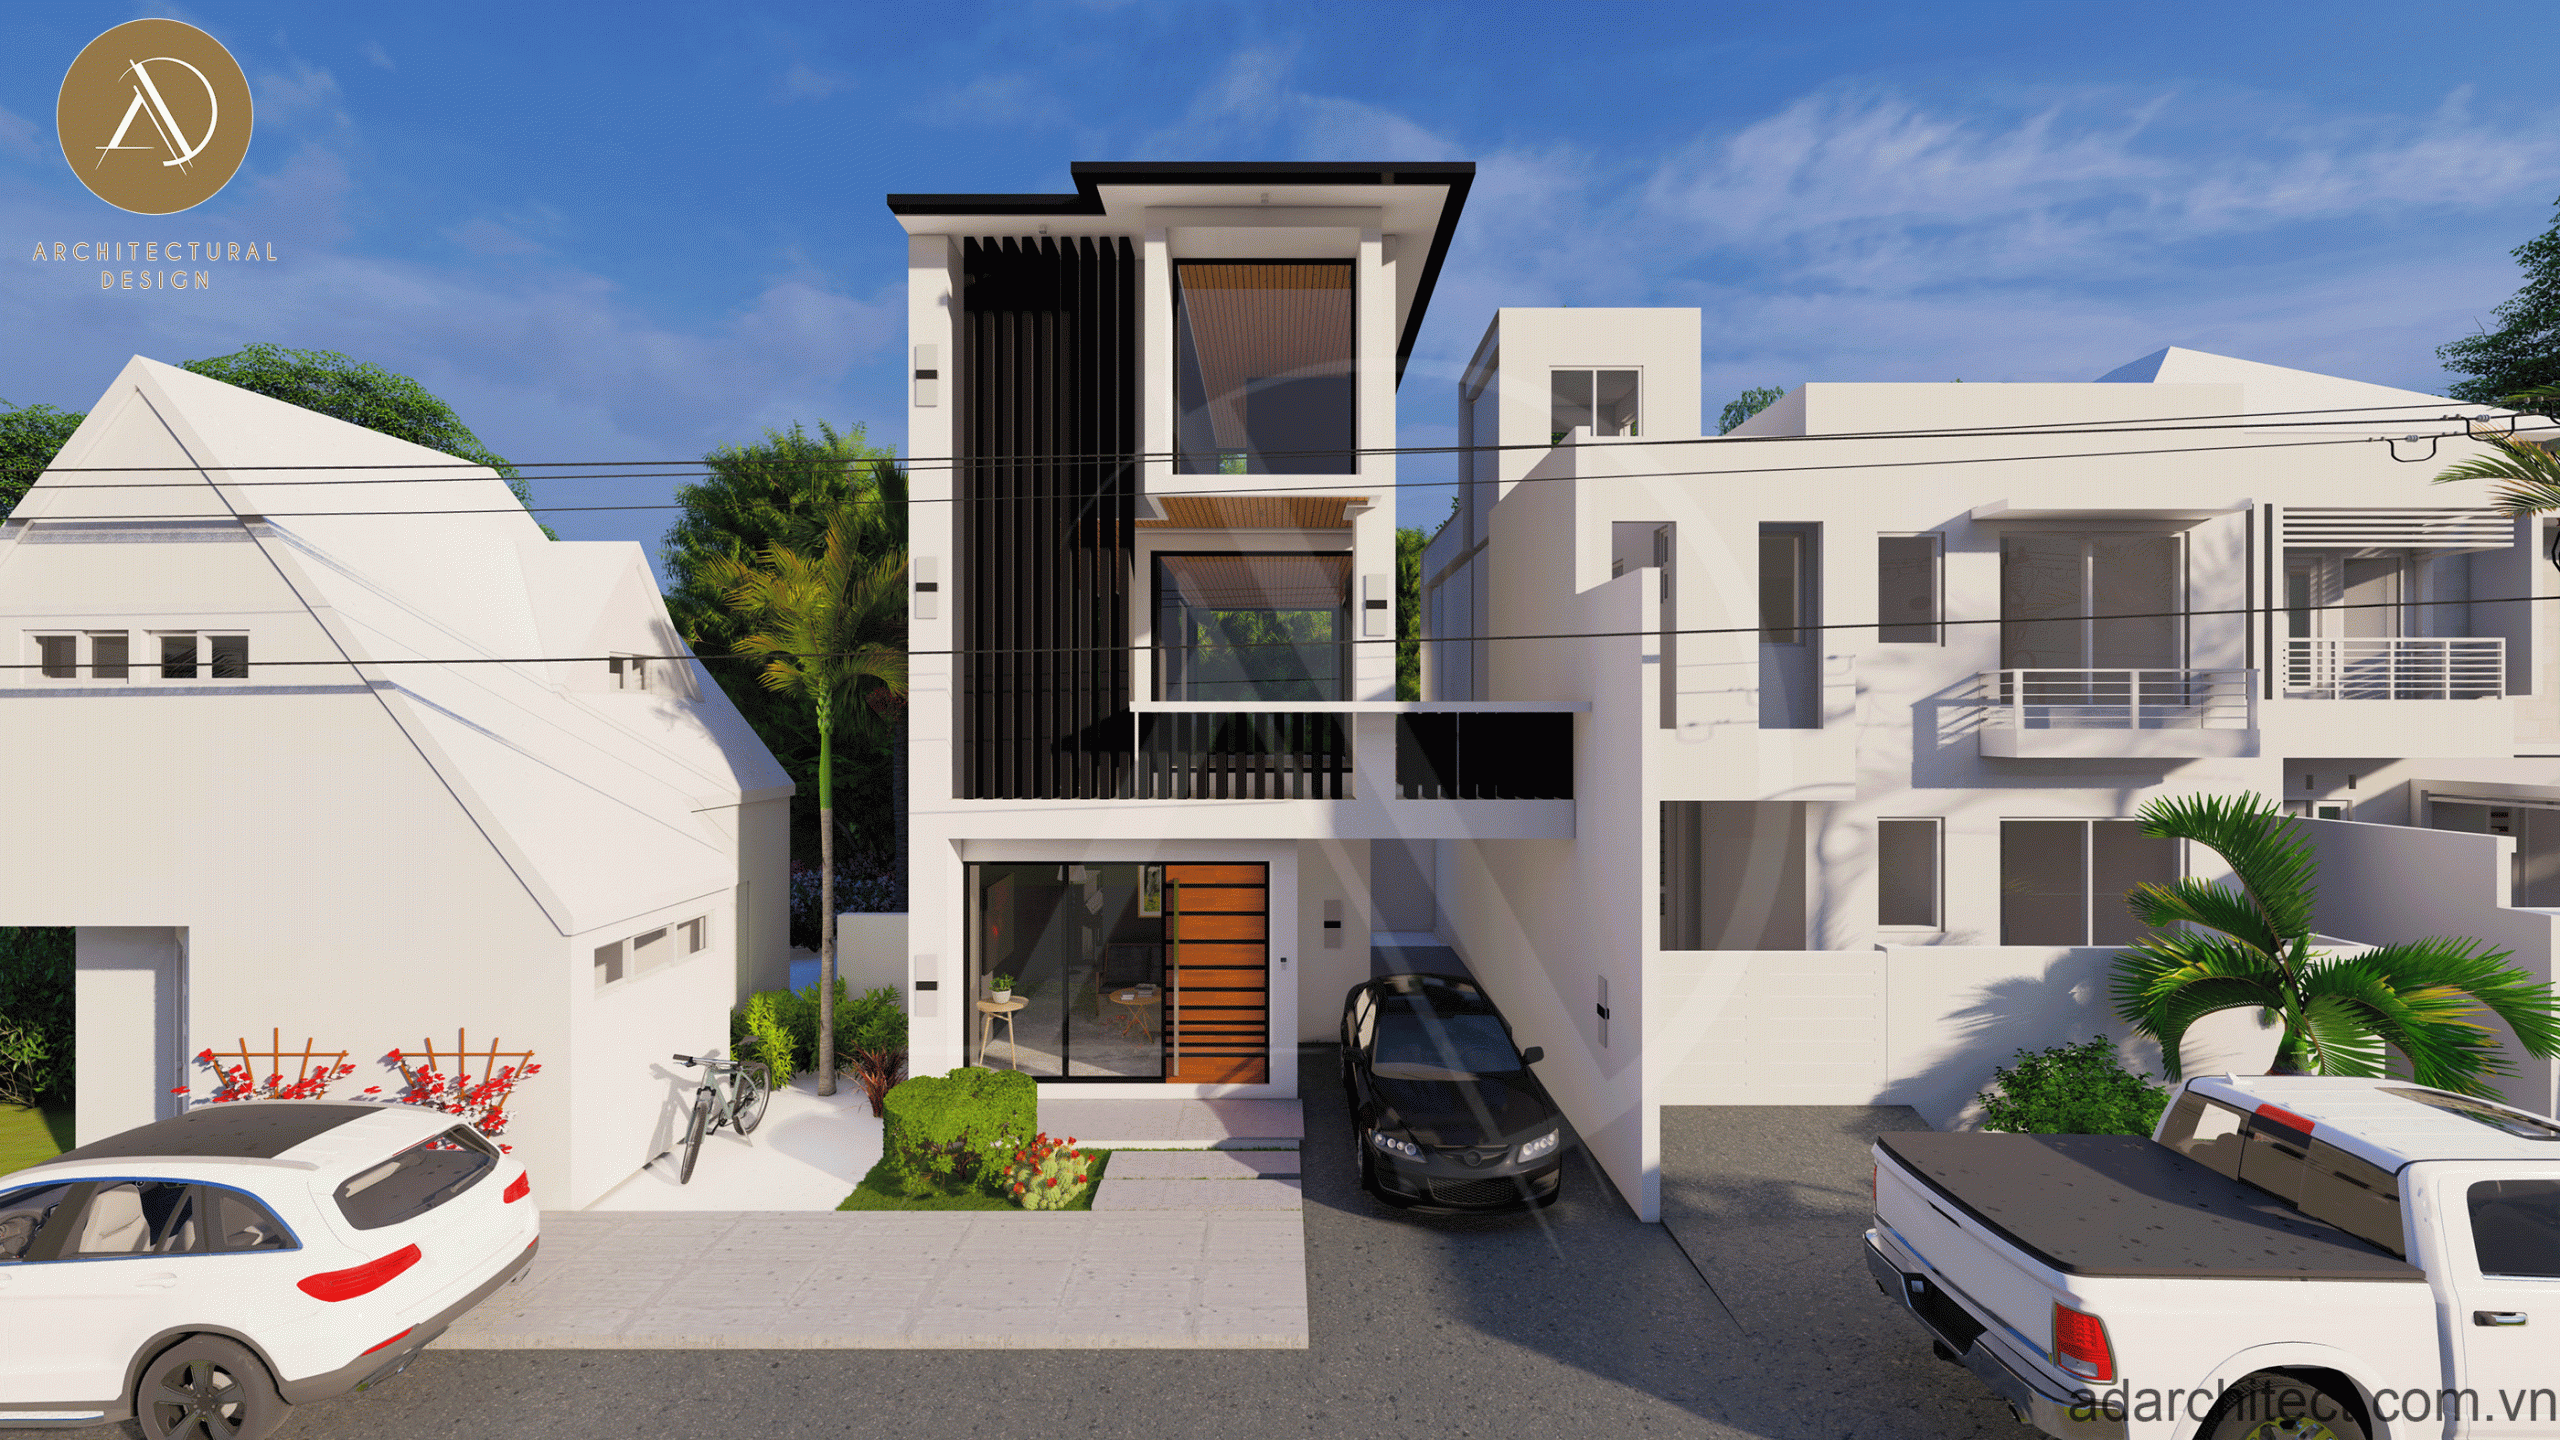 mẫu thiết kế nhà 2 tầng: thiết kế nhà phố đơn giản, đầy đủ công năng